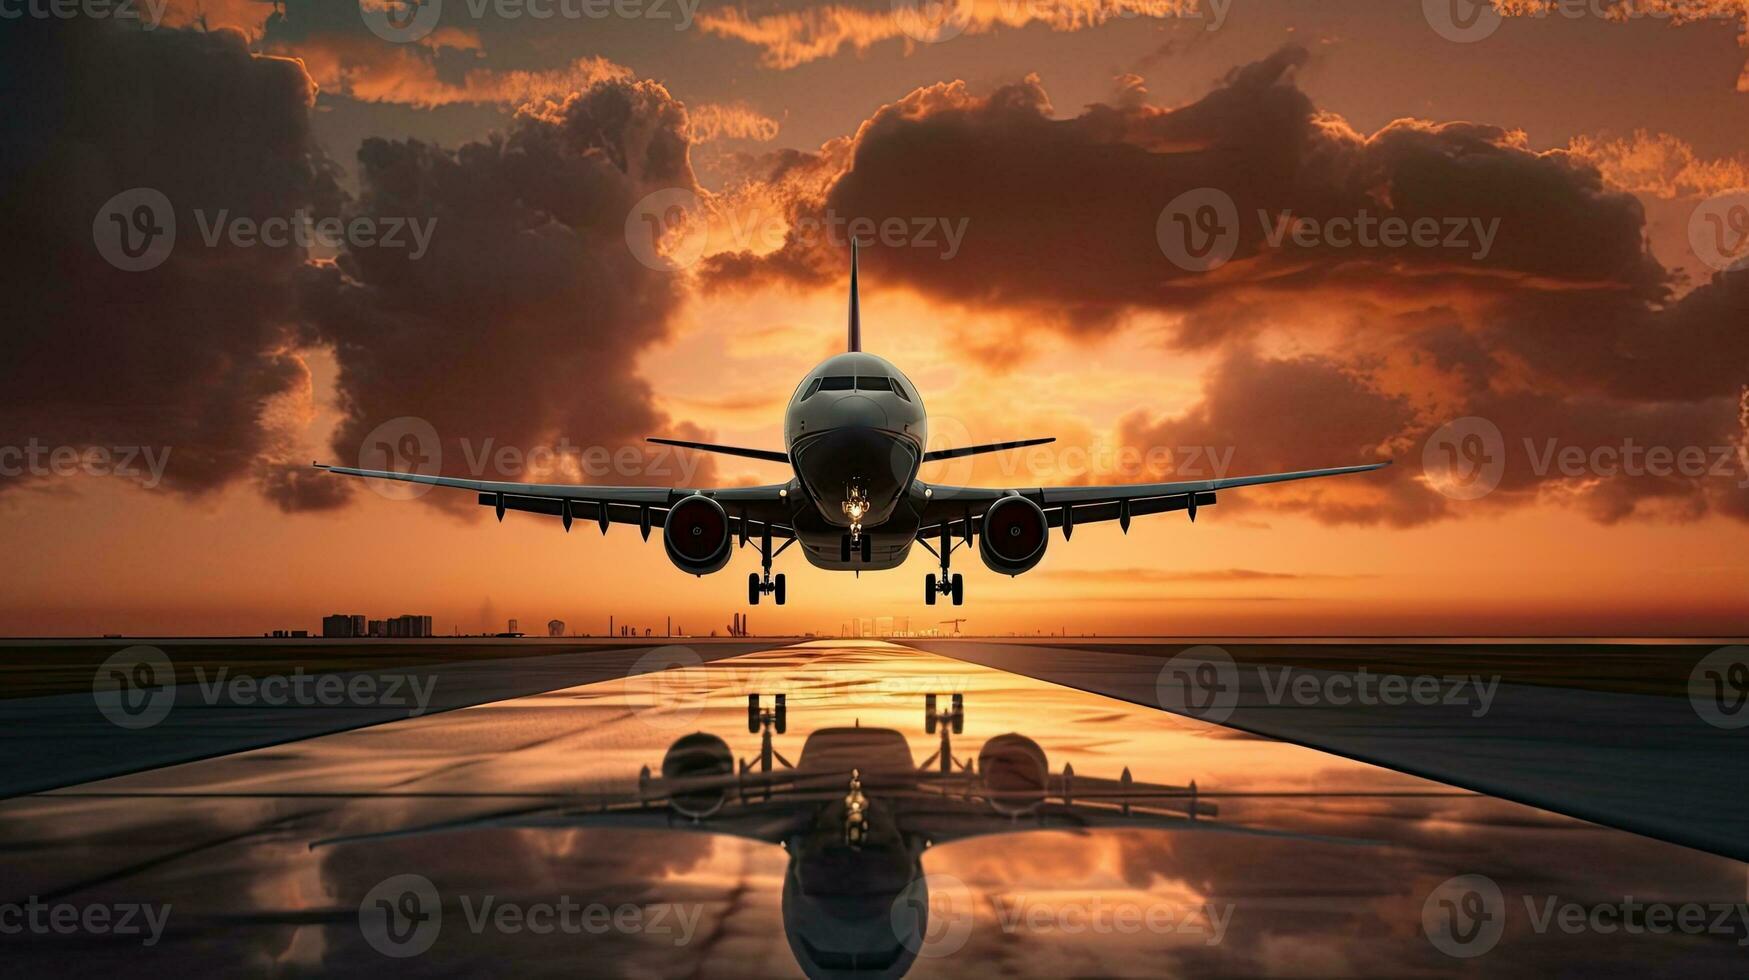 avión tomando apagado y aterrizaje a puesta de sol con nublado cielo foto